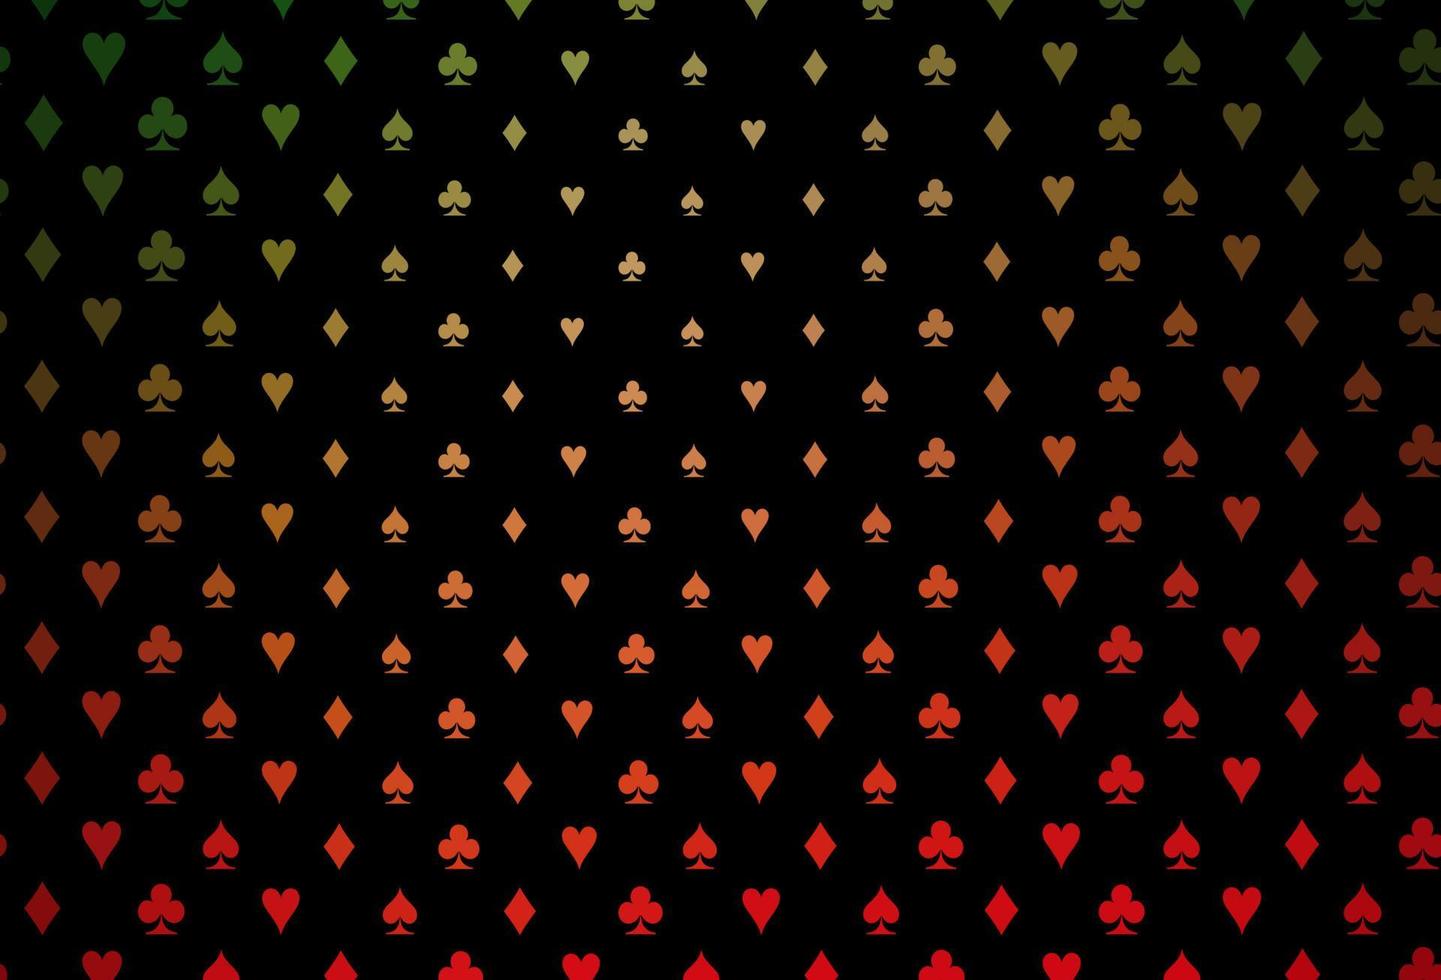 modelo de vetor verde e vermelho escuro com símbolos de pôquer.